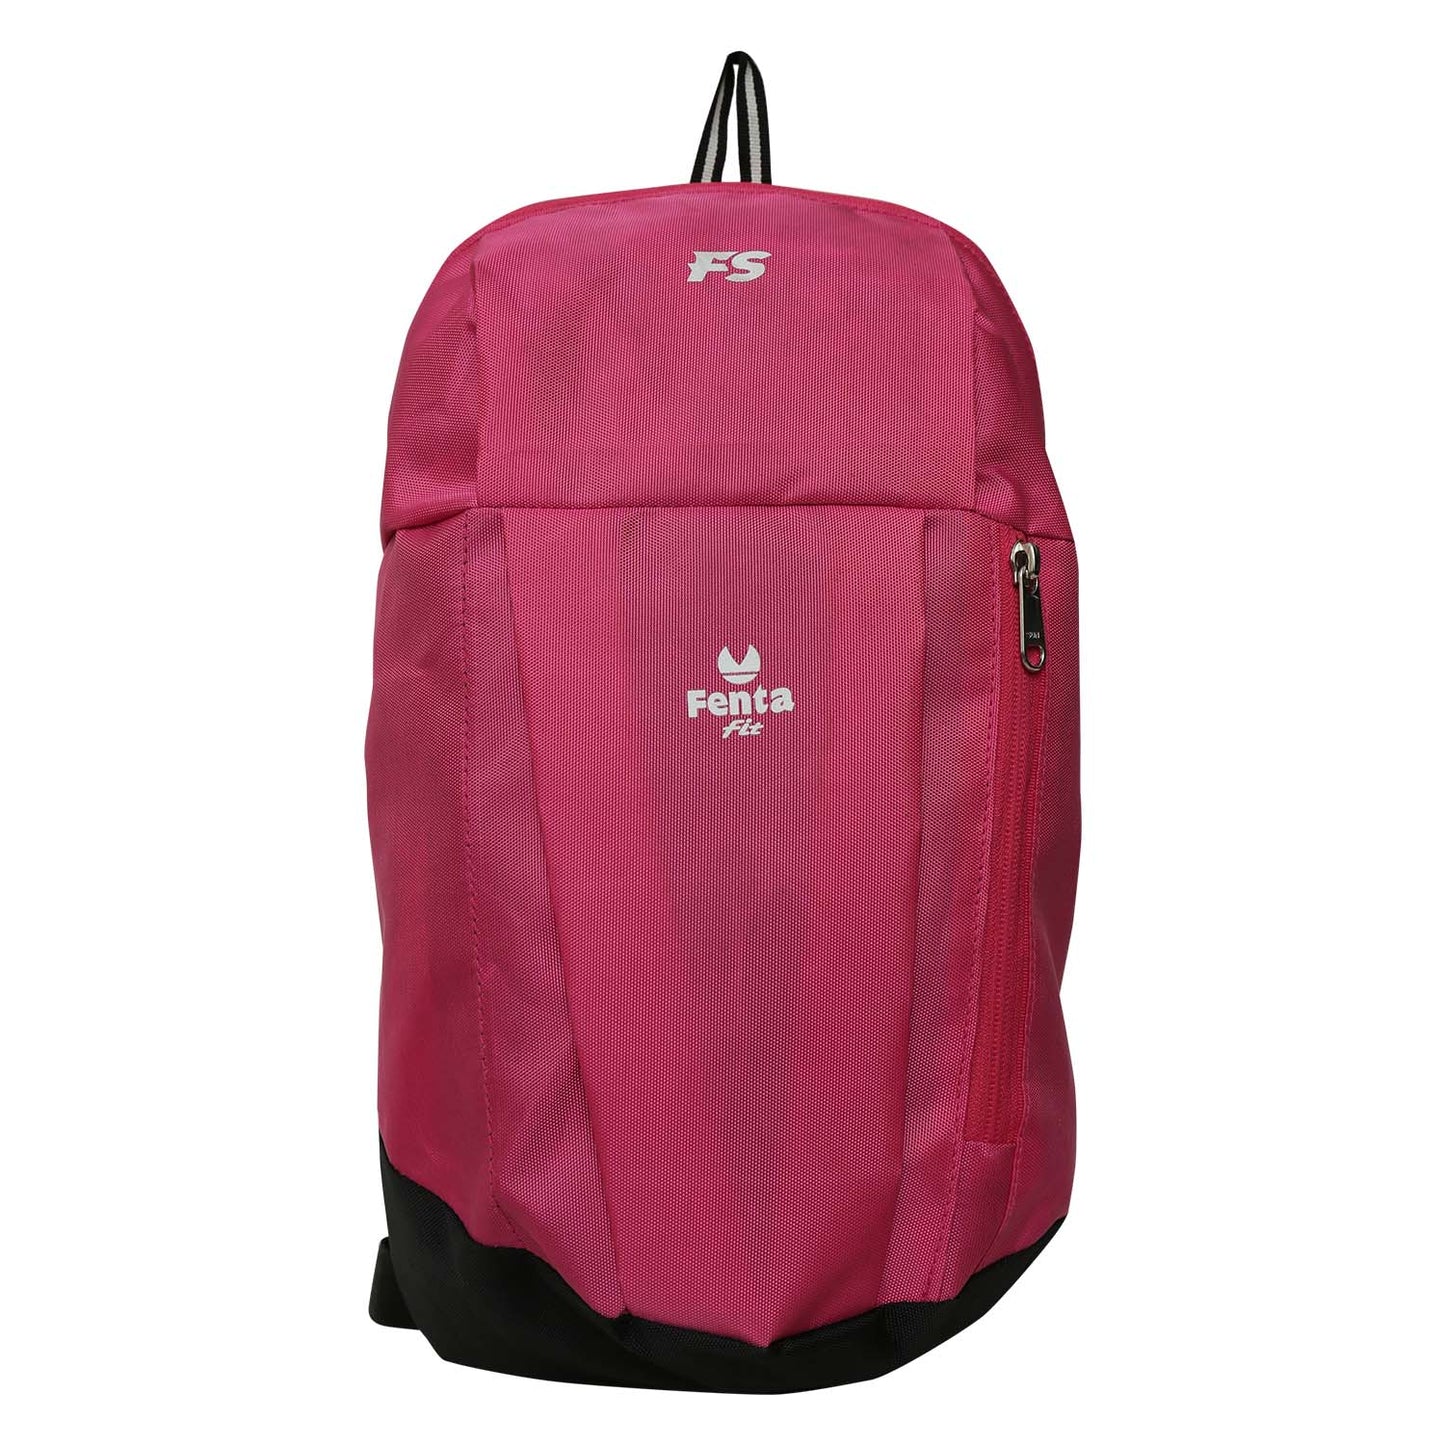 Fents Sports Unisx Bag Backpack (Pink- Black)